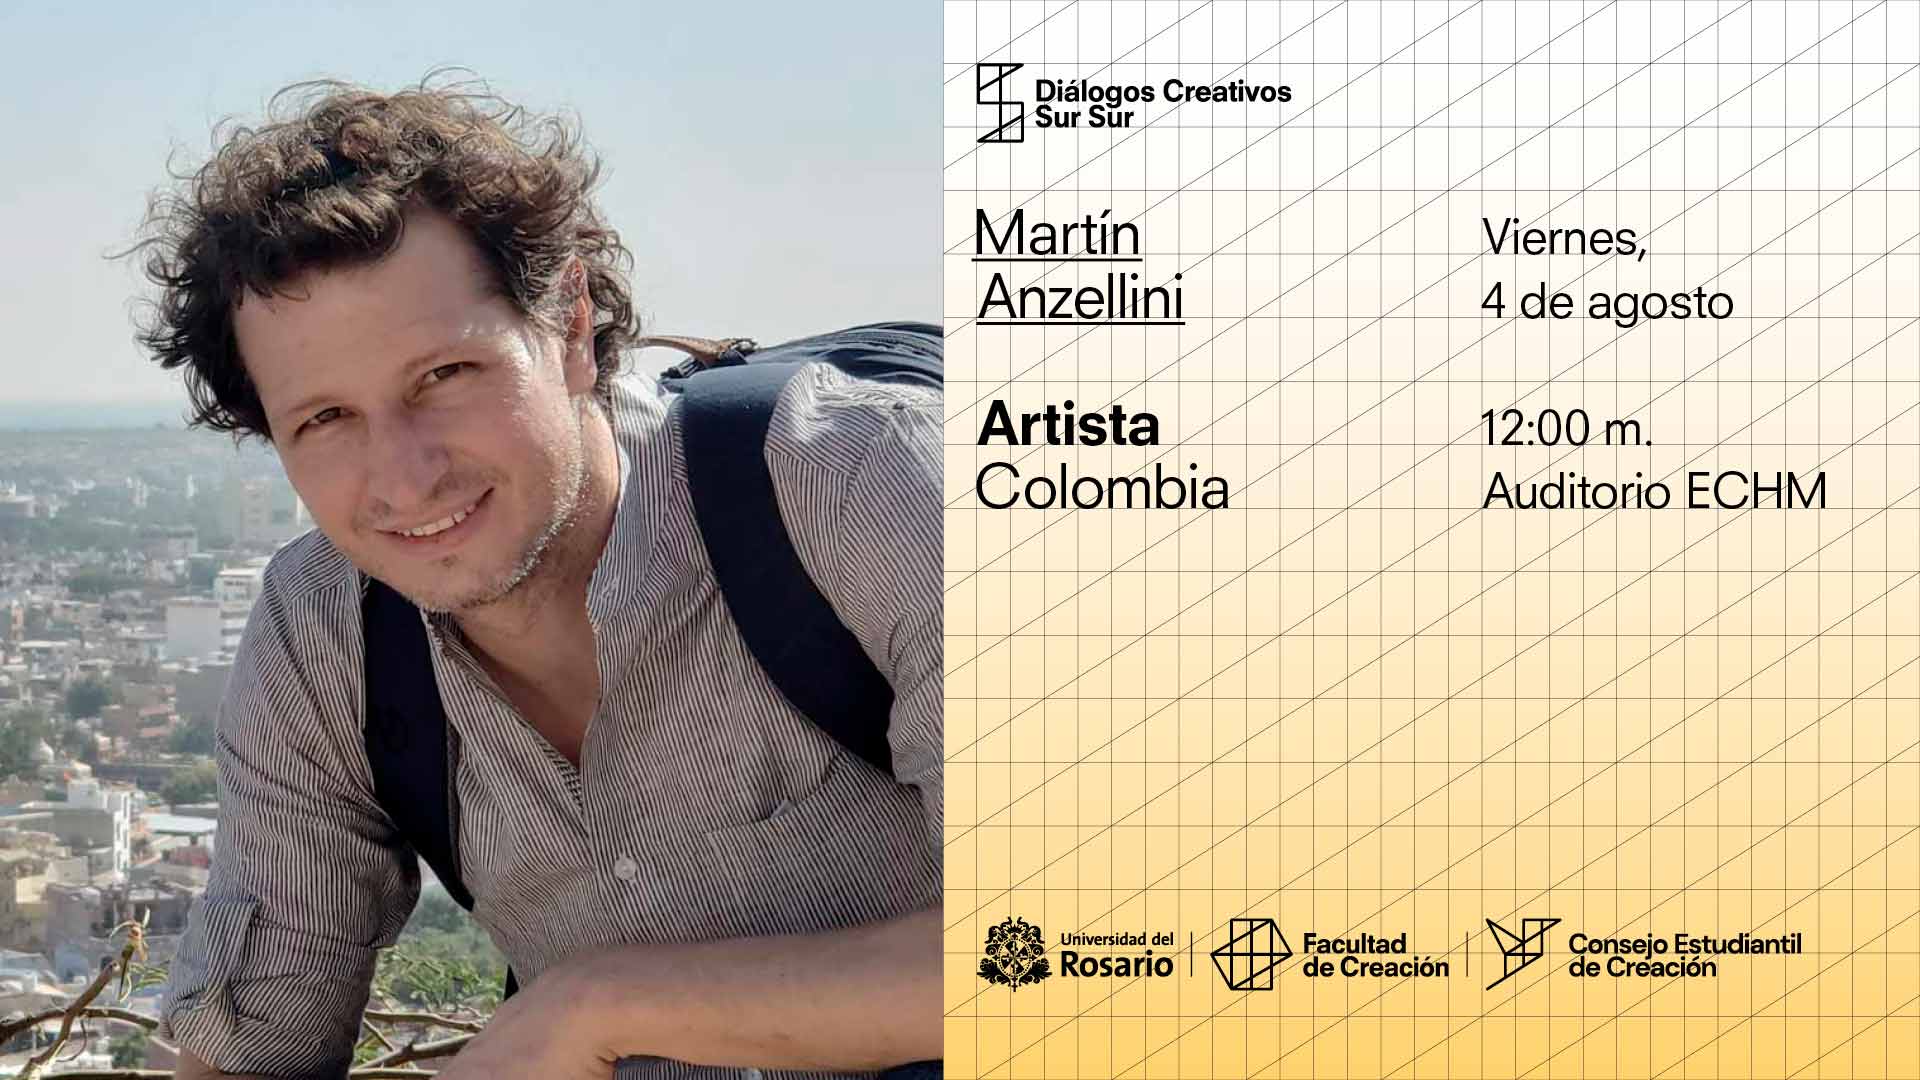 Diálogos Creativos Sur Sur: Martín Anzellini, Colombia